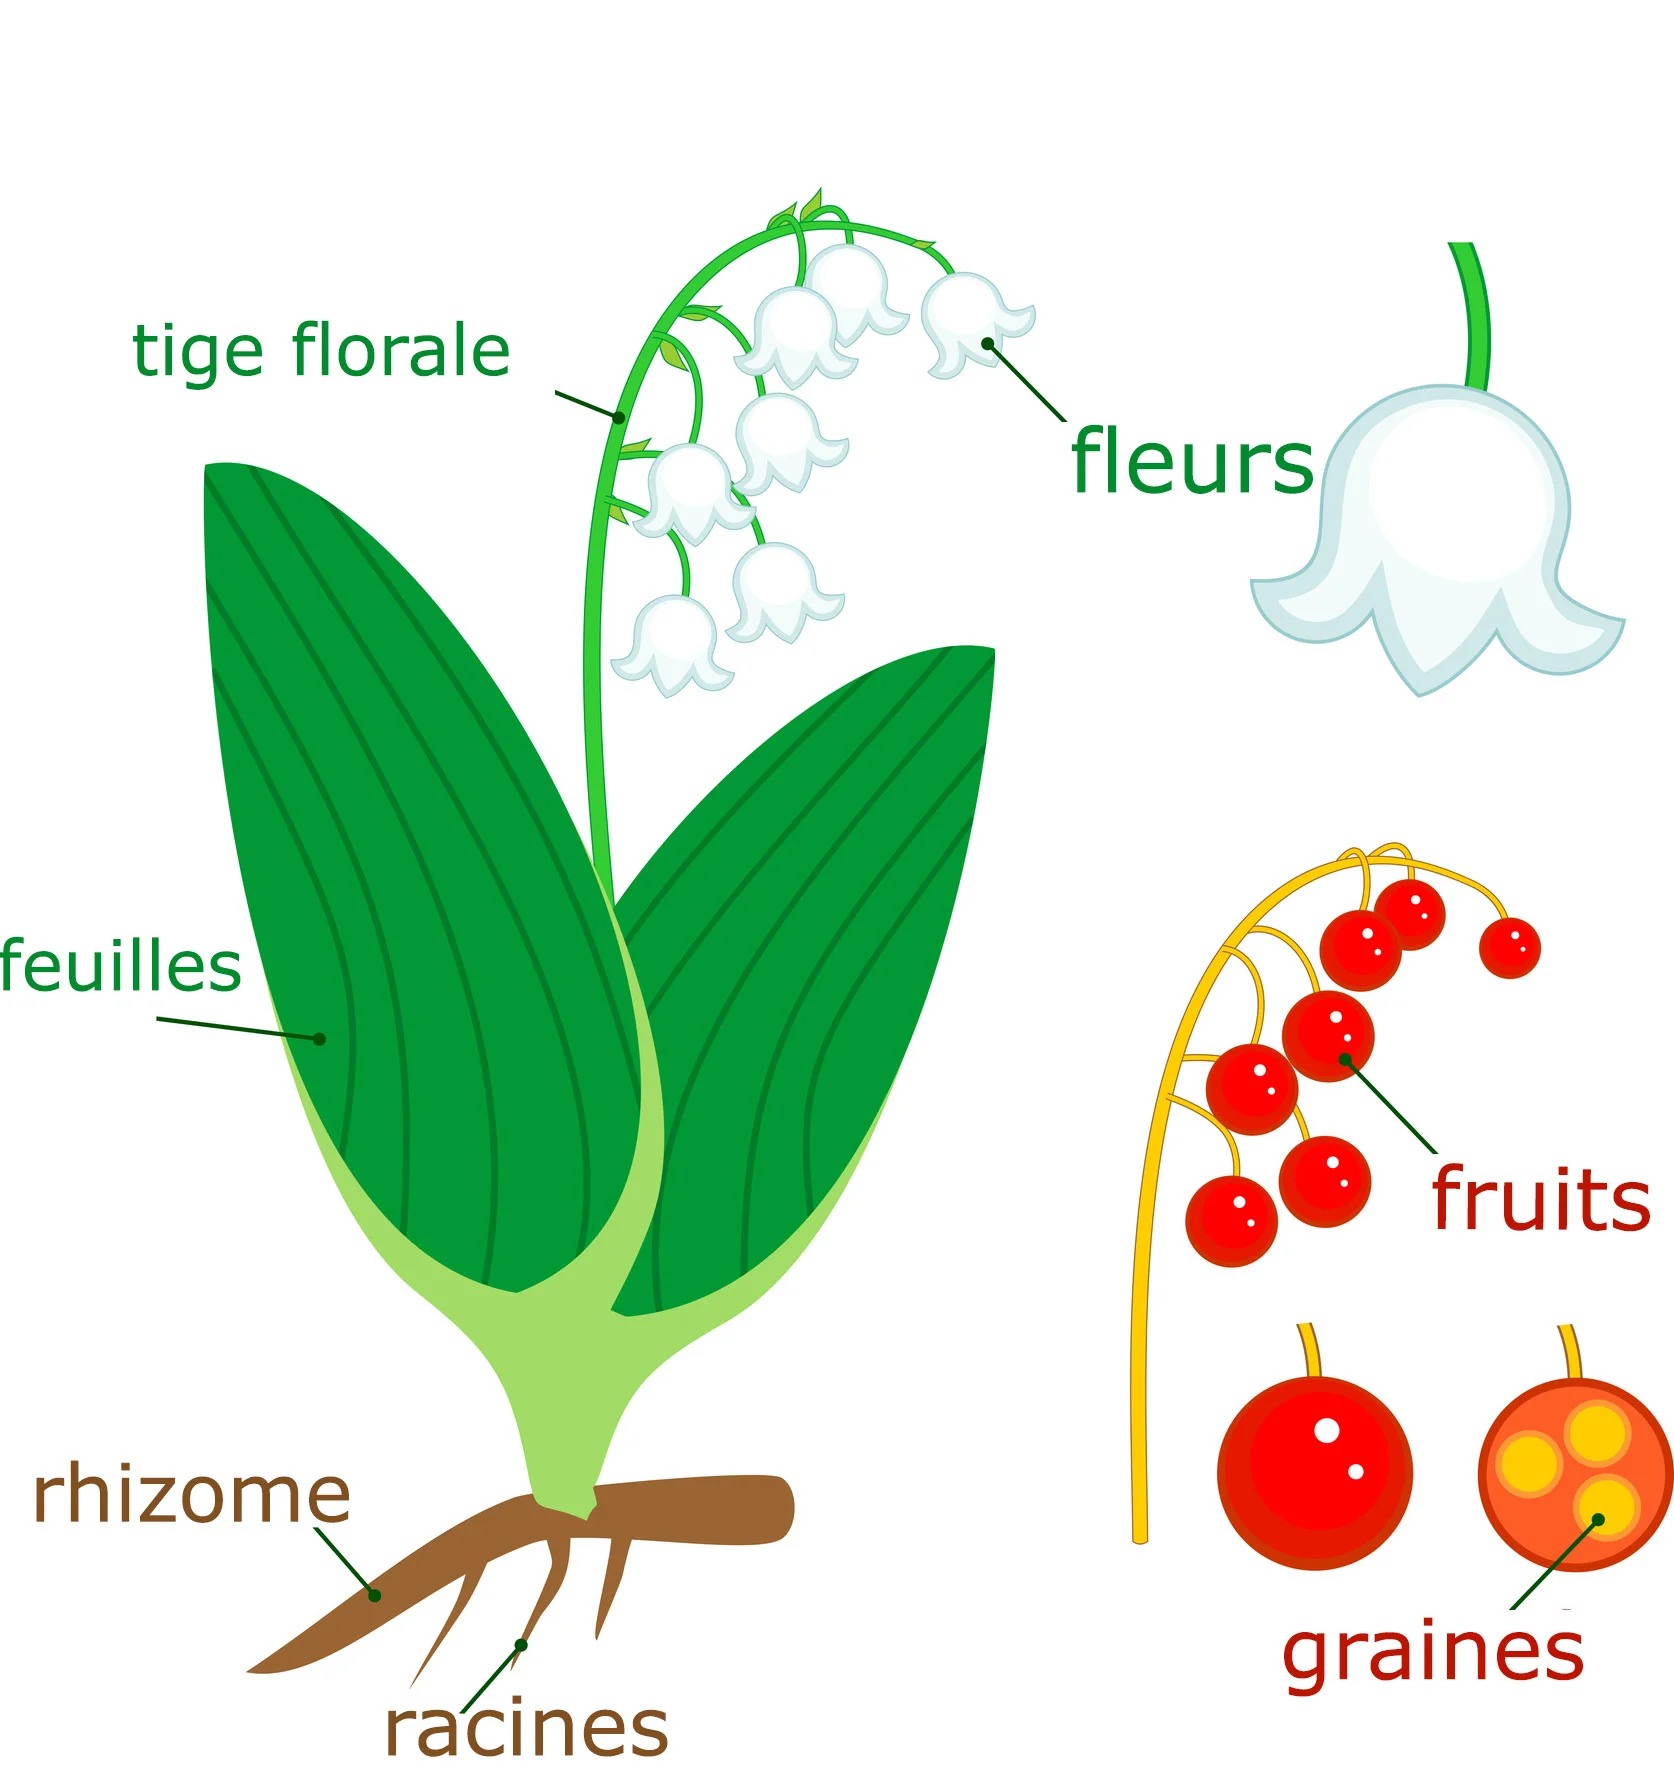 Cette image illustre les différentes parties de la plante de muguet fleuri (Convallaria majalis), de la base à la cime. Les racines robustes ancrent la plante dans le sol, alimentant les rhizomes rampants qui assurent sa propagation. Les feuilles lancéolées, contribuant à la photosynthèse, émergent directement du rhizome. La tige florale s'élève pour soutenir une inflorescence en racème, composée de délicates clochettes blanches. Ces fleurs donnent naissance, en été, à de petits fruits rouges contenant les graines pour la reproduction future du muguet.